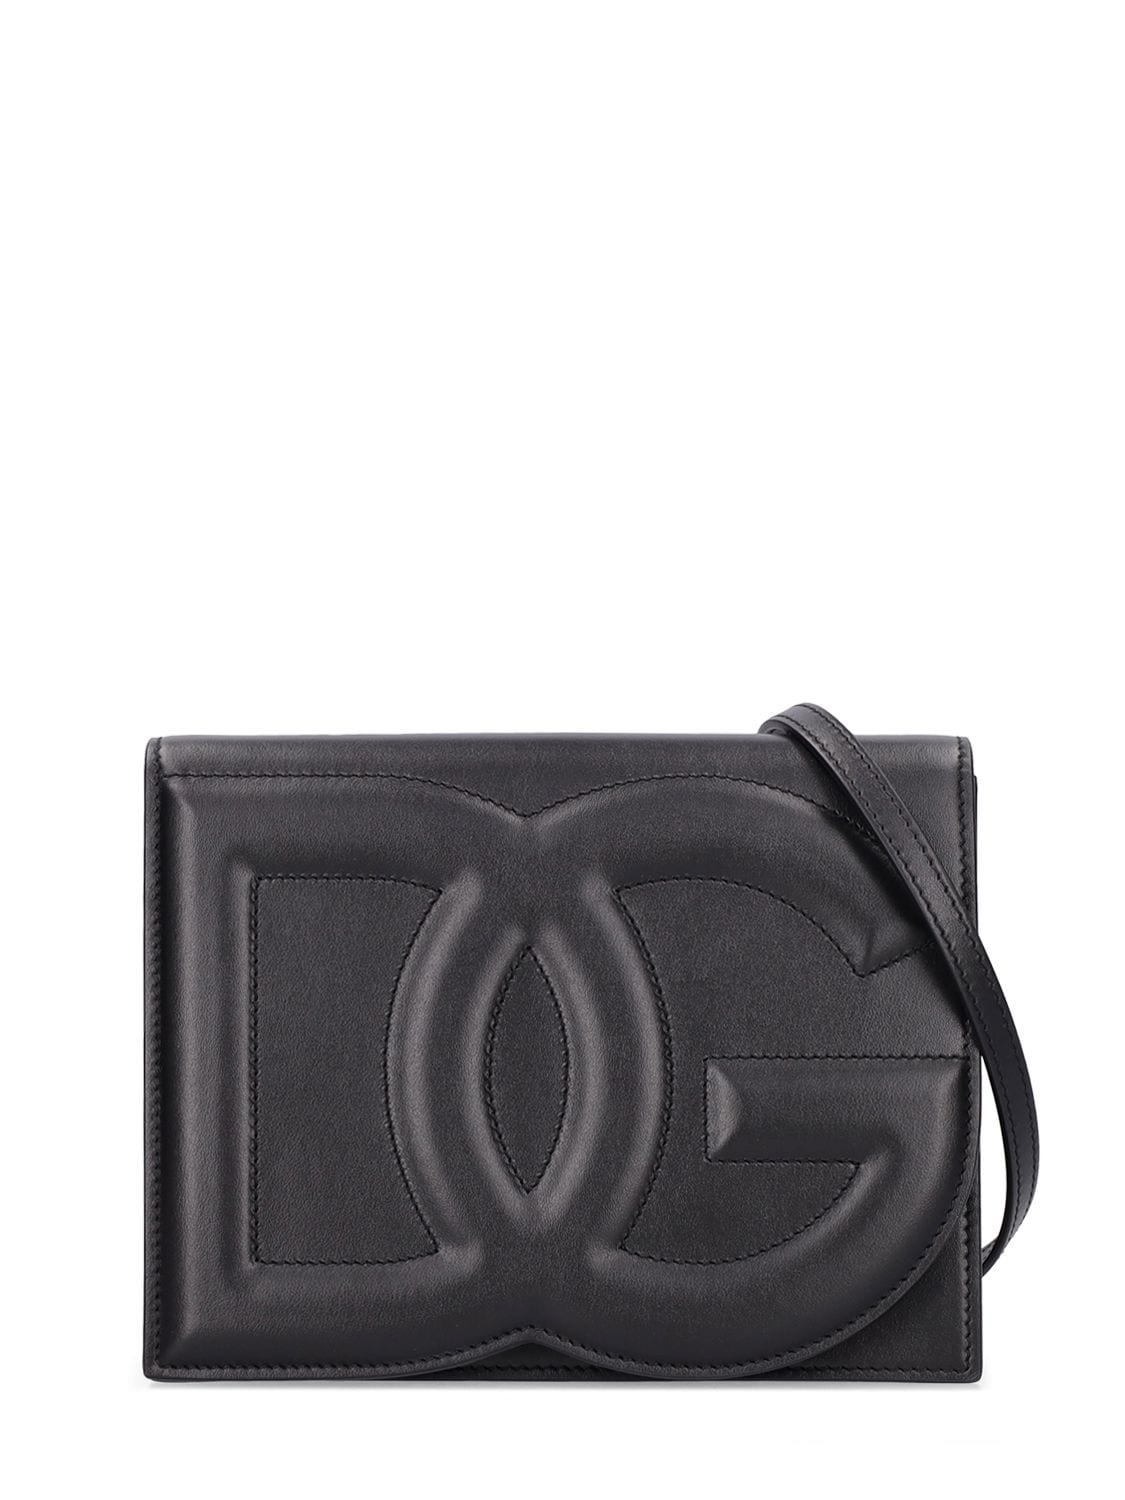 Dolce & Gabbana Dg Logo Leather Shoulder Bag In Black